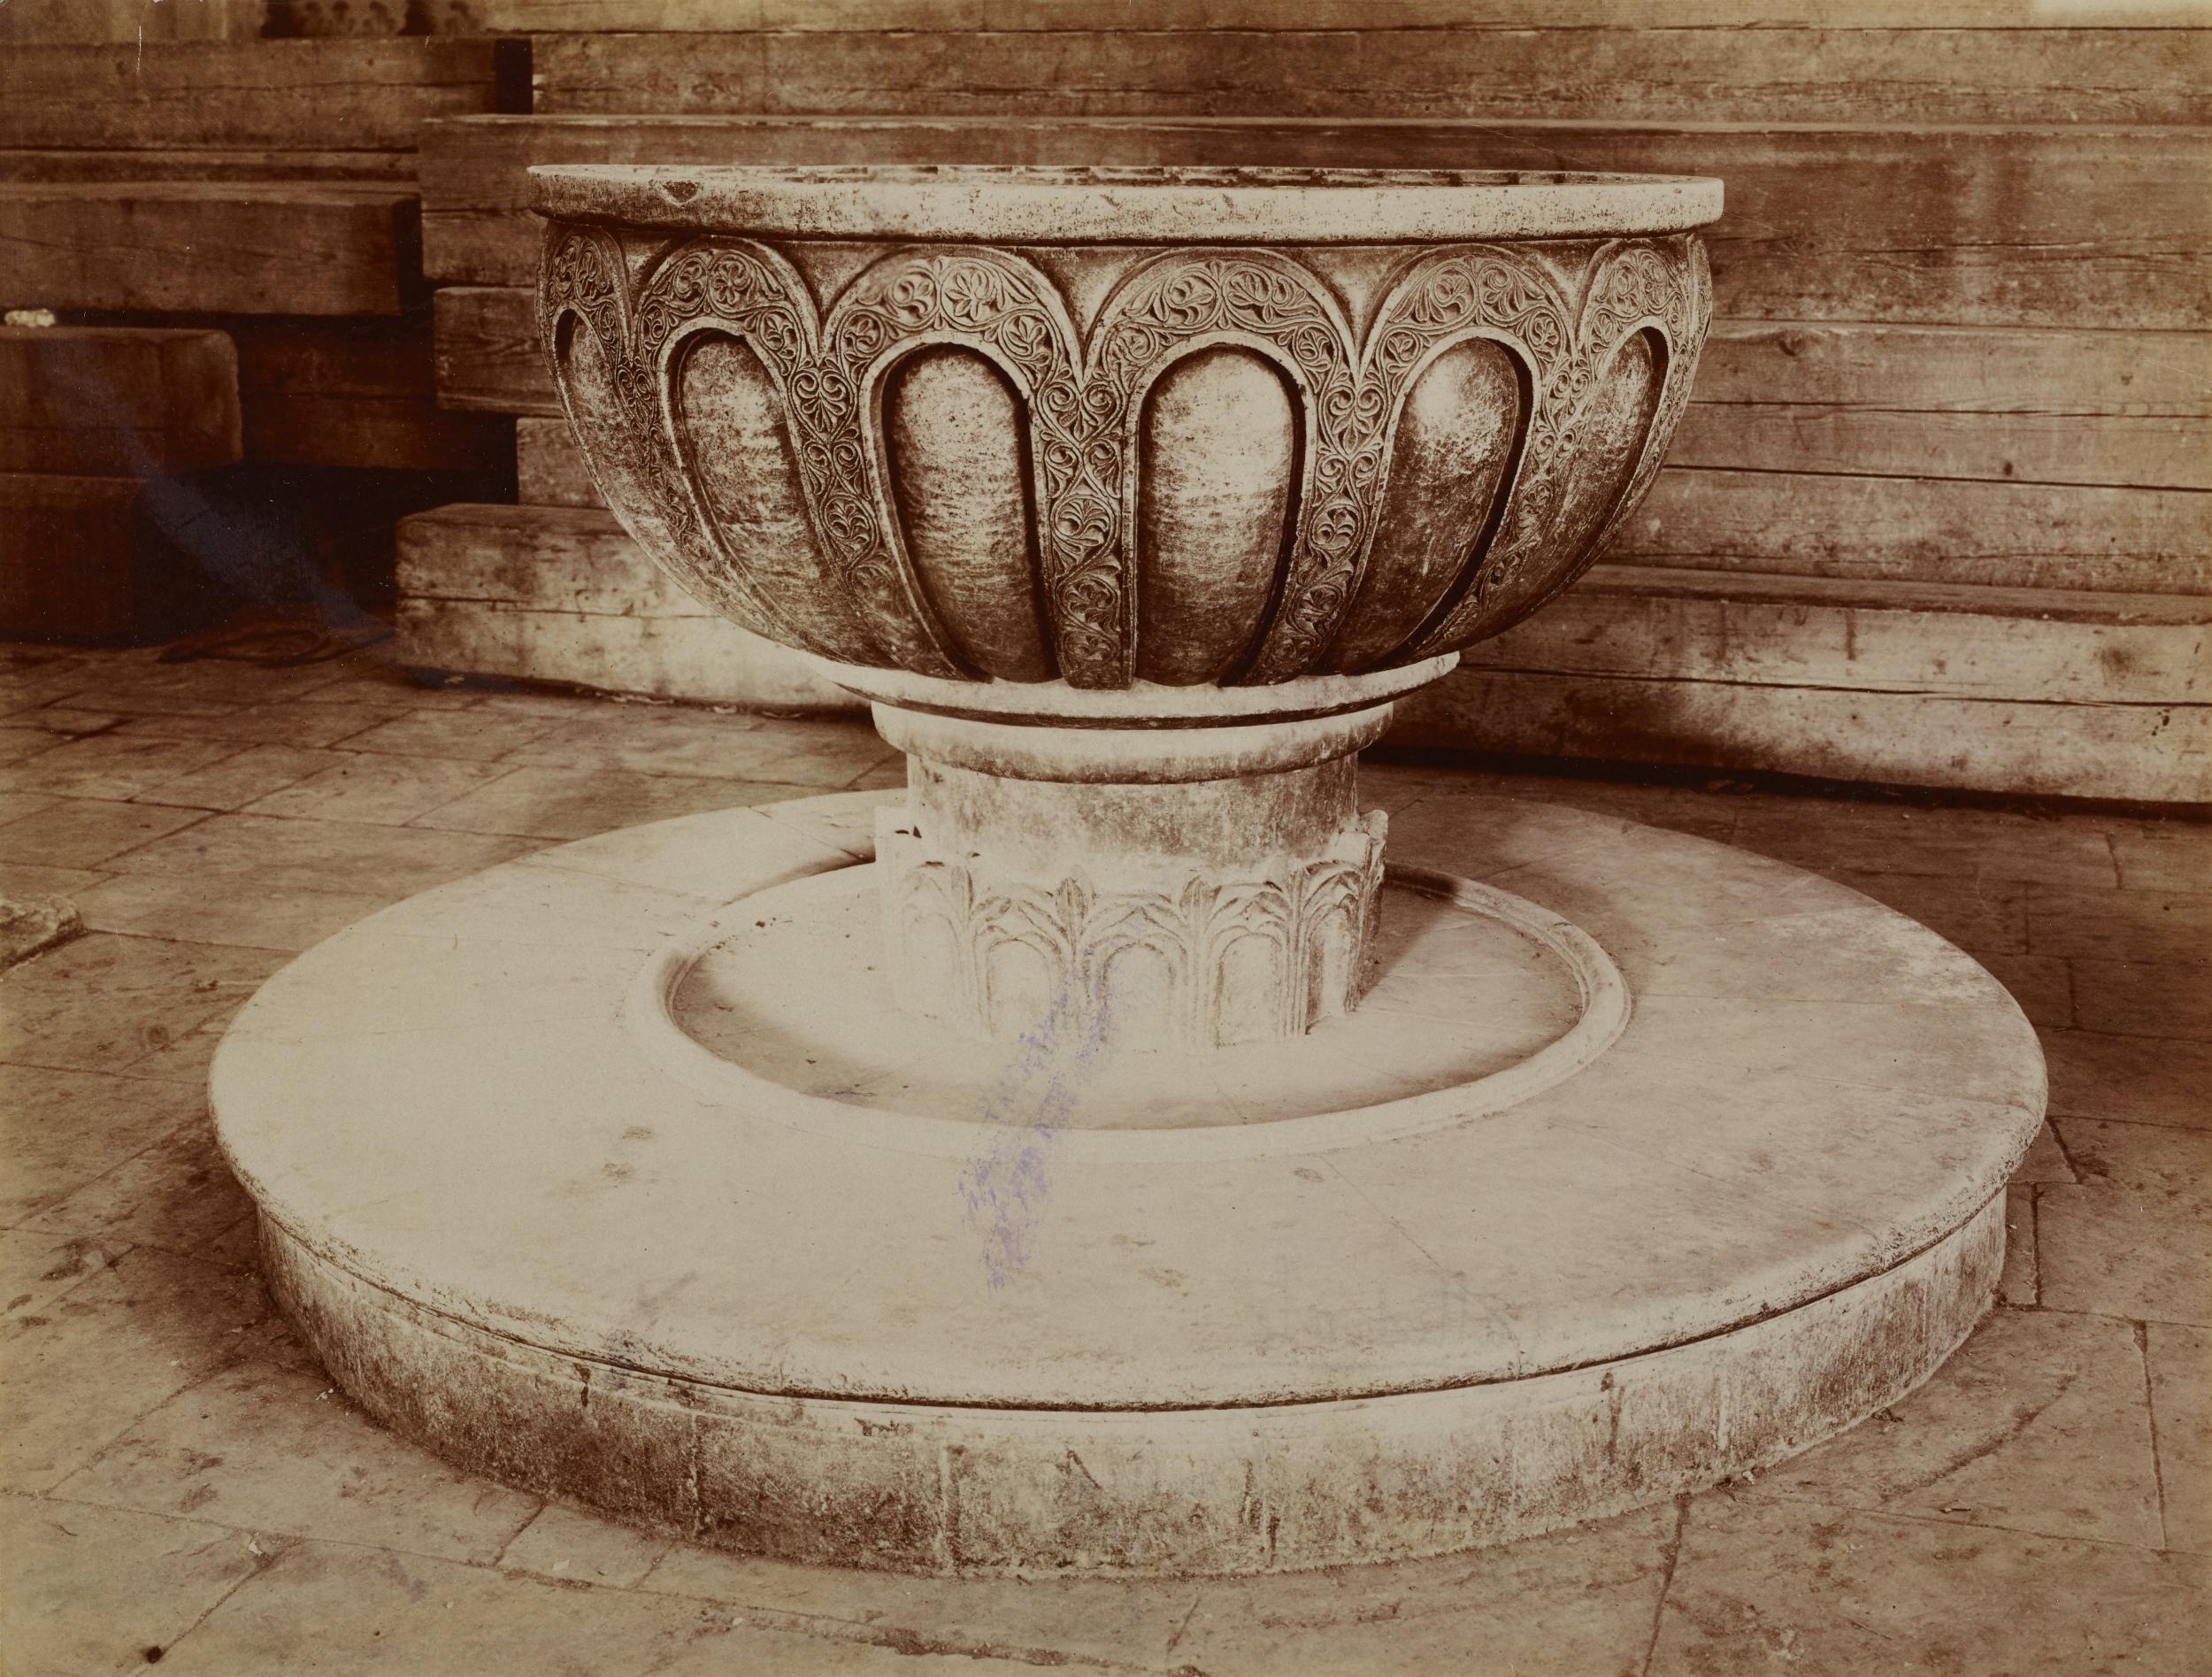 Fotografo non identificato, Bitonto - Cattedrale di S. Valentino, fonte battesimale - prima del restauri, 1876-1900, albumina/carta, MPI137887